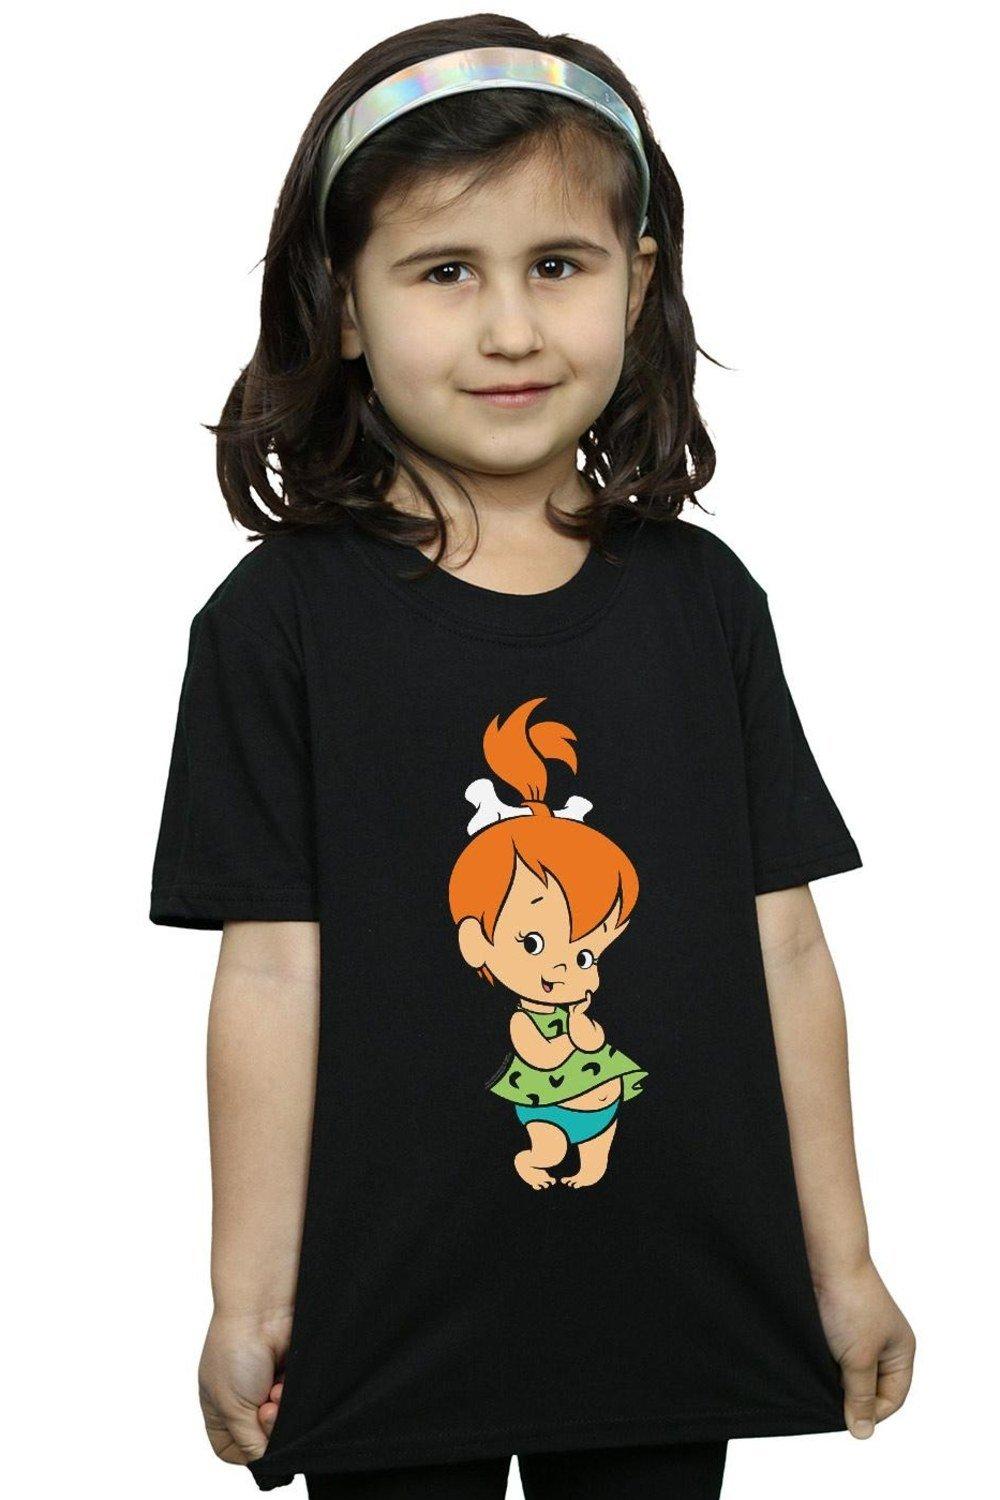 Pebbles Flintstone Cotton T-Shirt